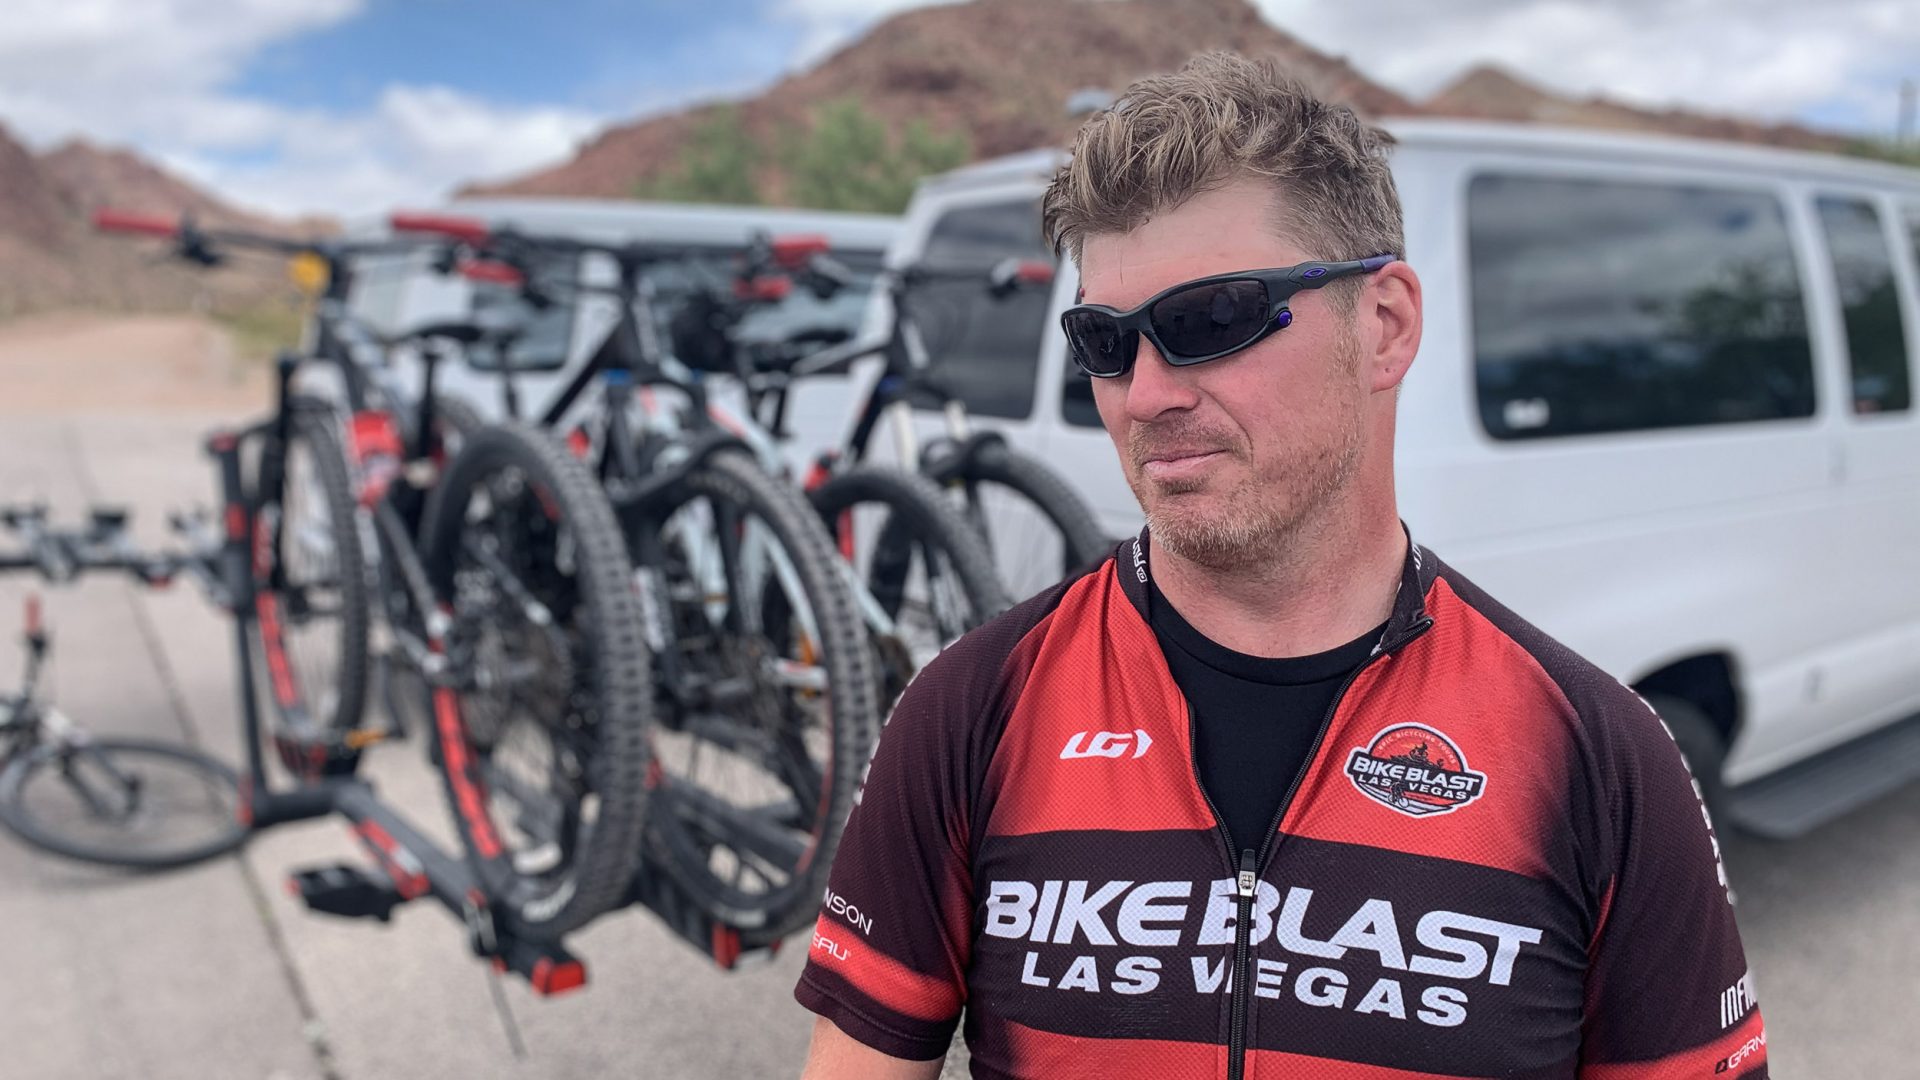 Geoff Flegal of Bike Blast, Las Vegas.